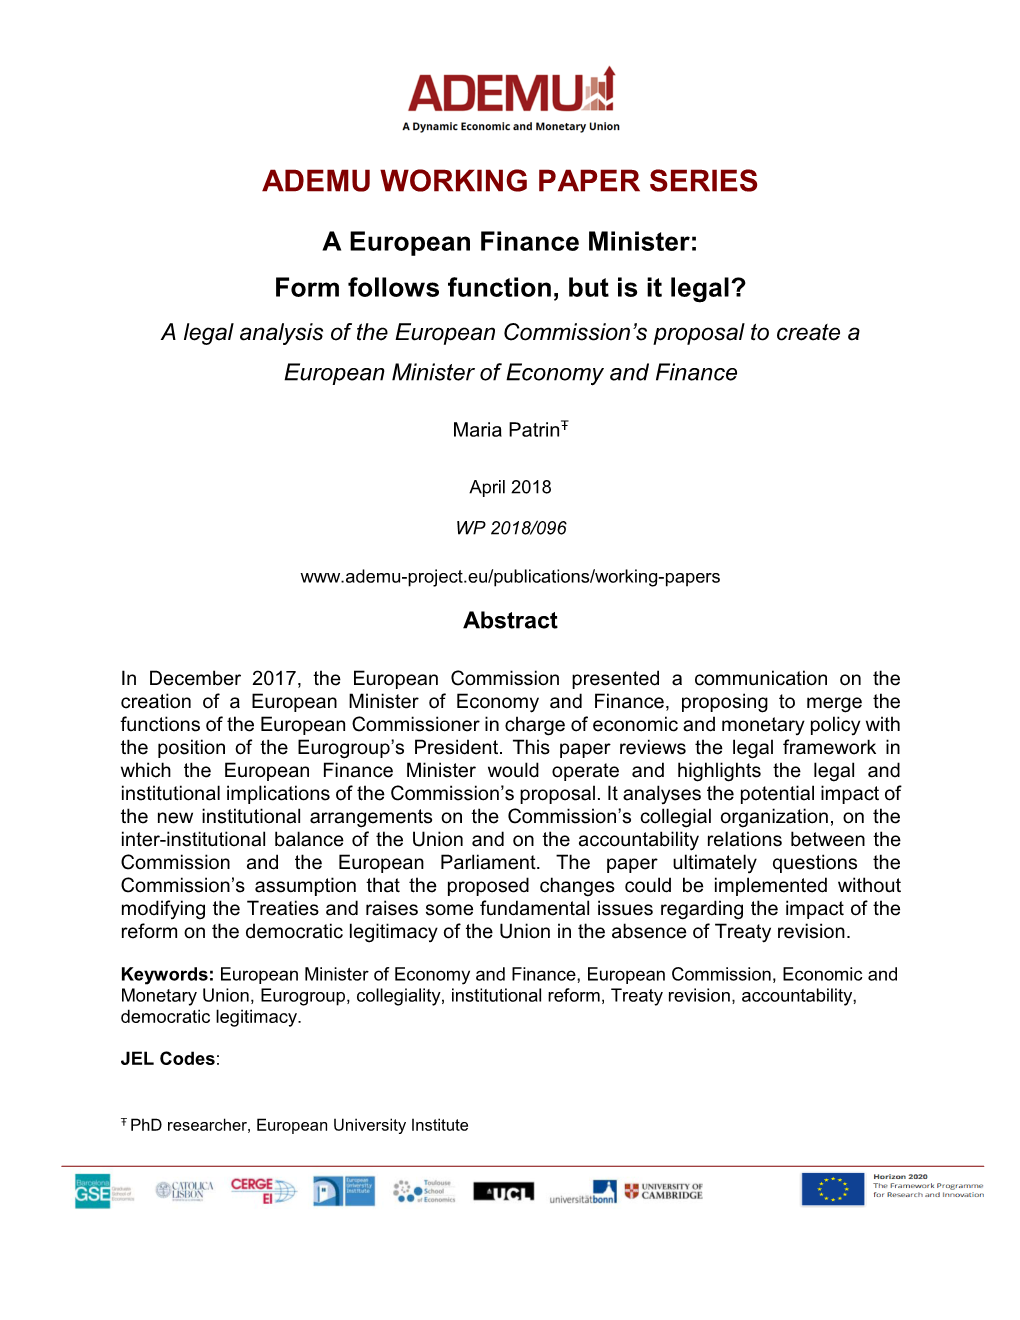 Ademu Working Paper Series